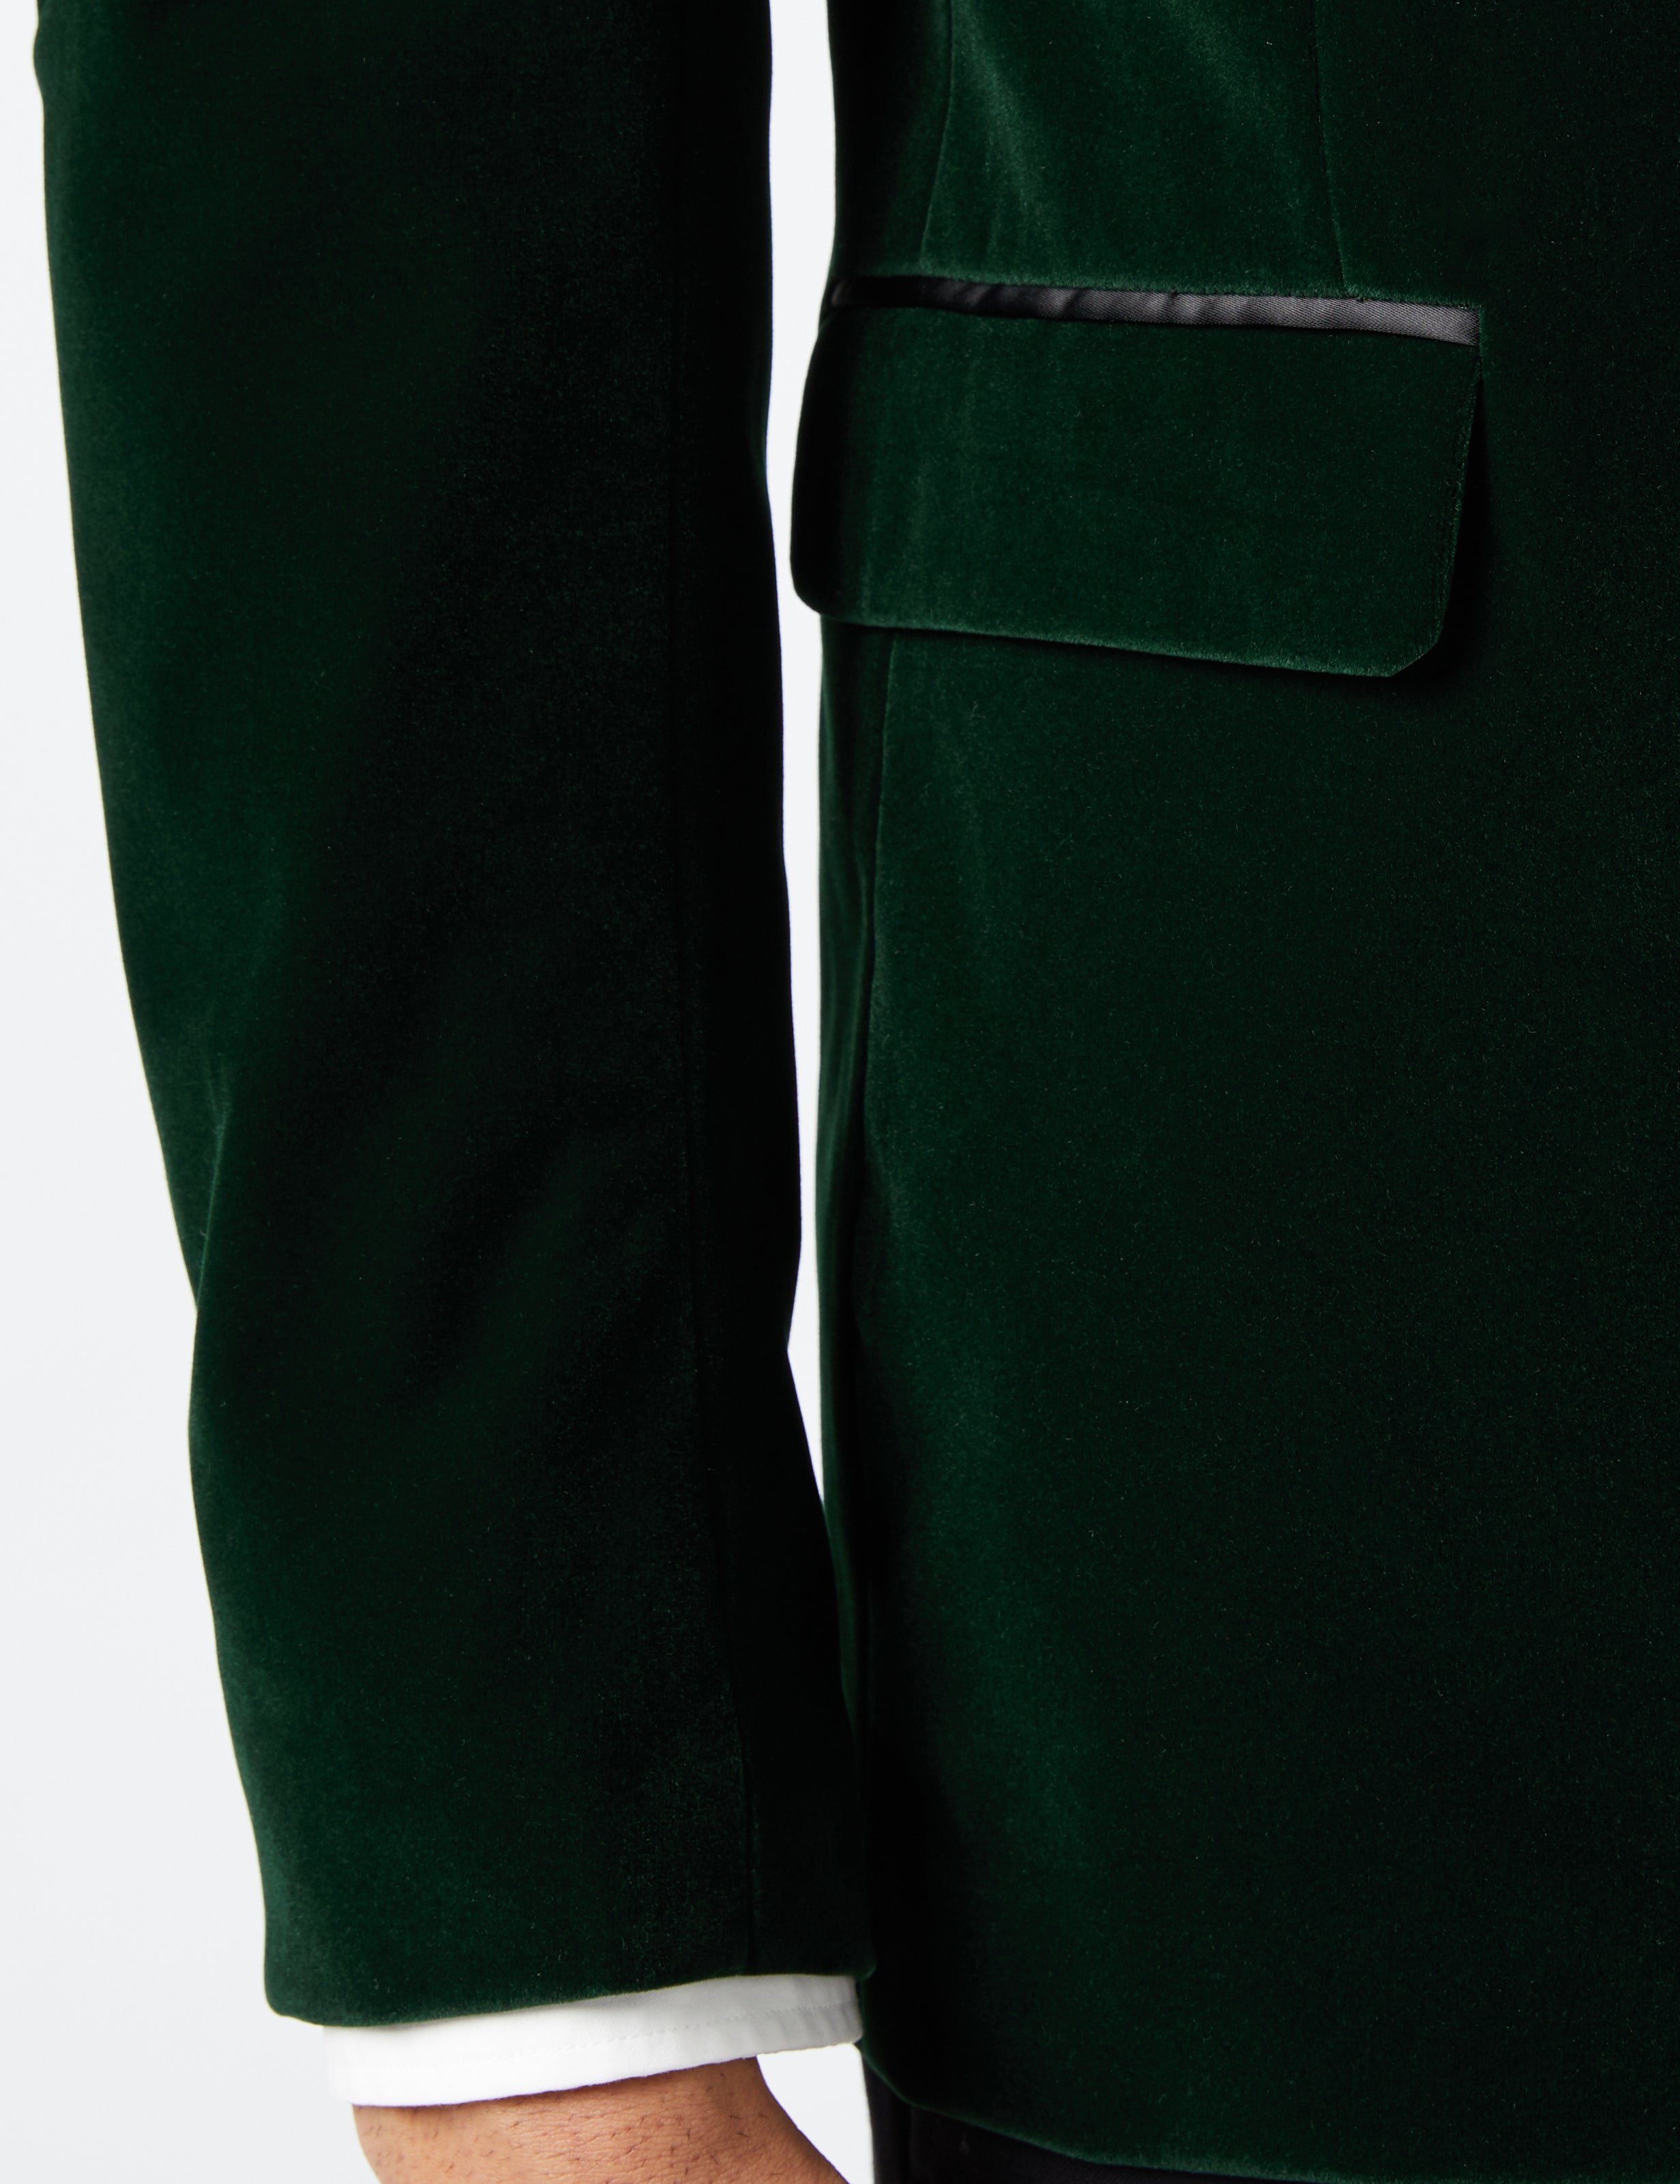 DINNER MAK - Green Soft Velvet Tuxedo Jacket